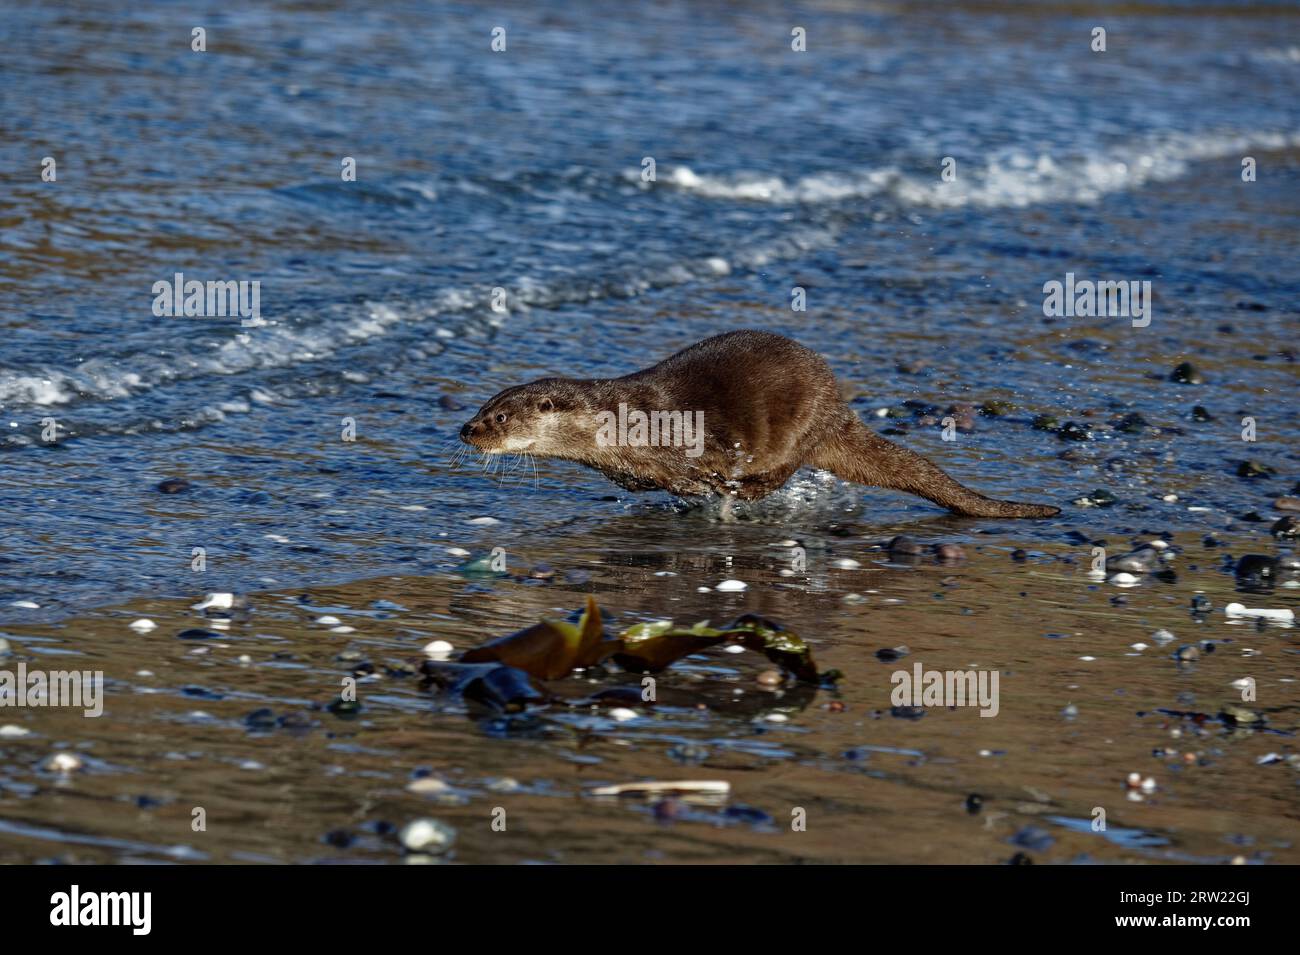 Loutre eurasienne (Lutra lutra) immature courant dans l'eau au bord de la plage. Banque D'Images